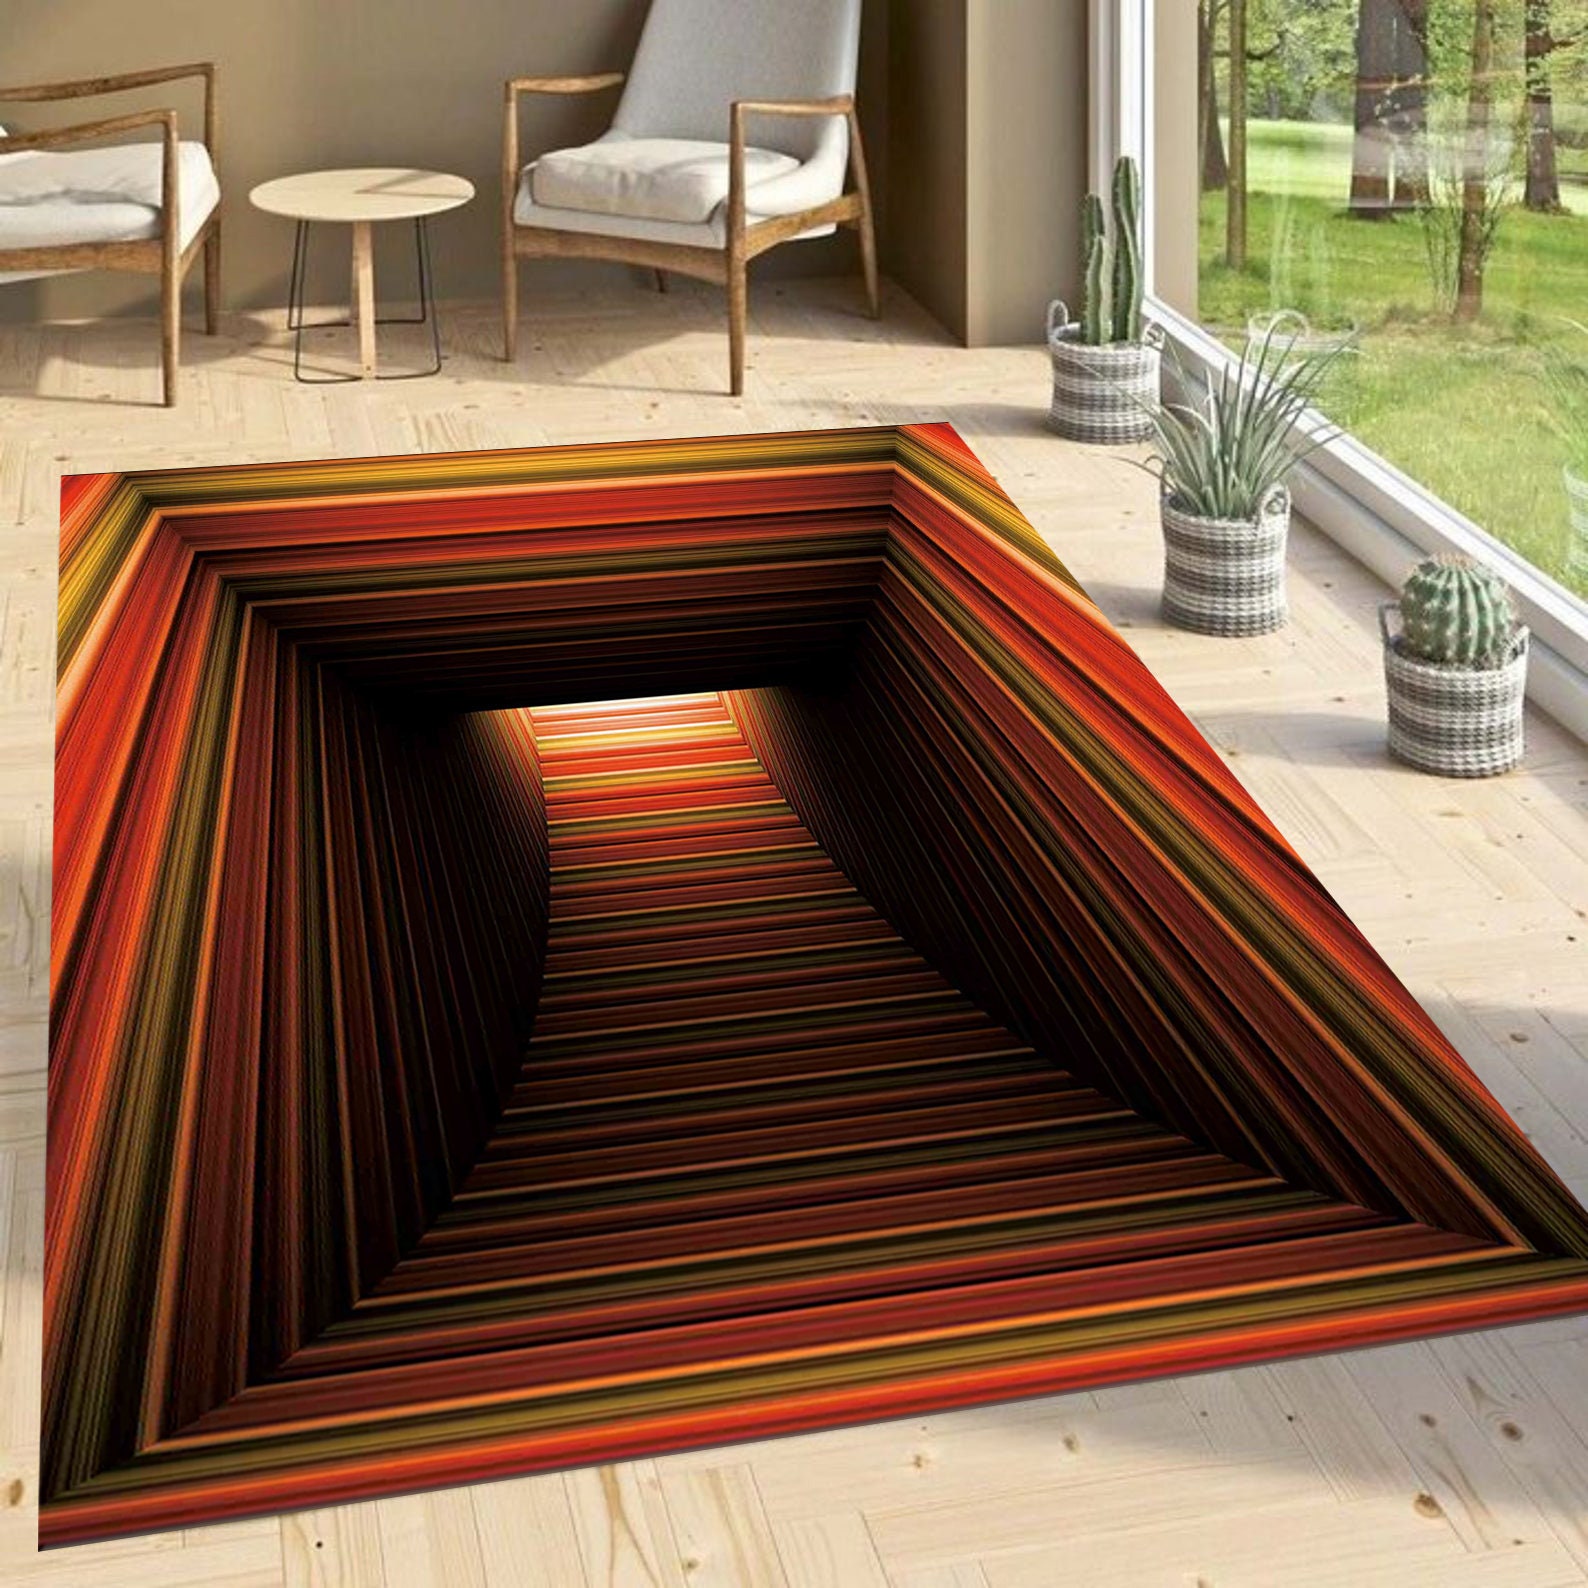 3D Printed Round Vortex Illusion Living Room Rug Carpet Floor Door